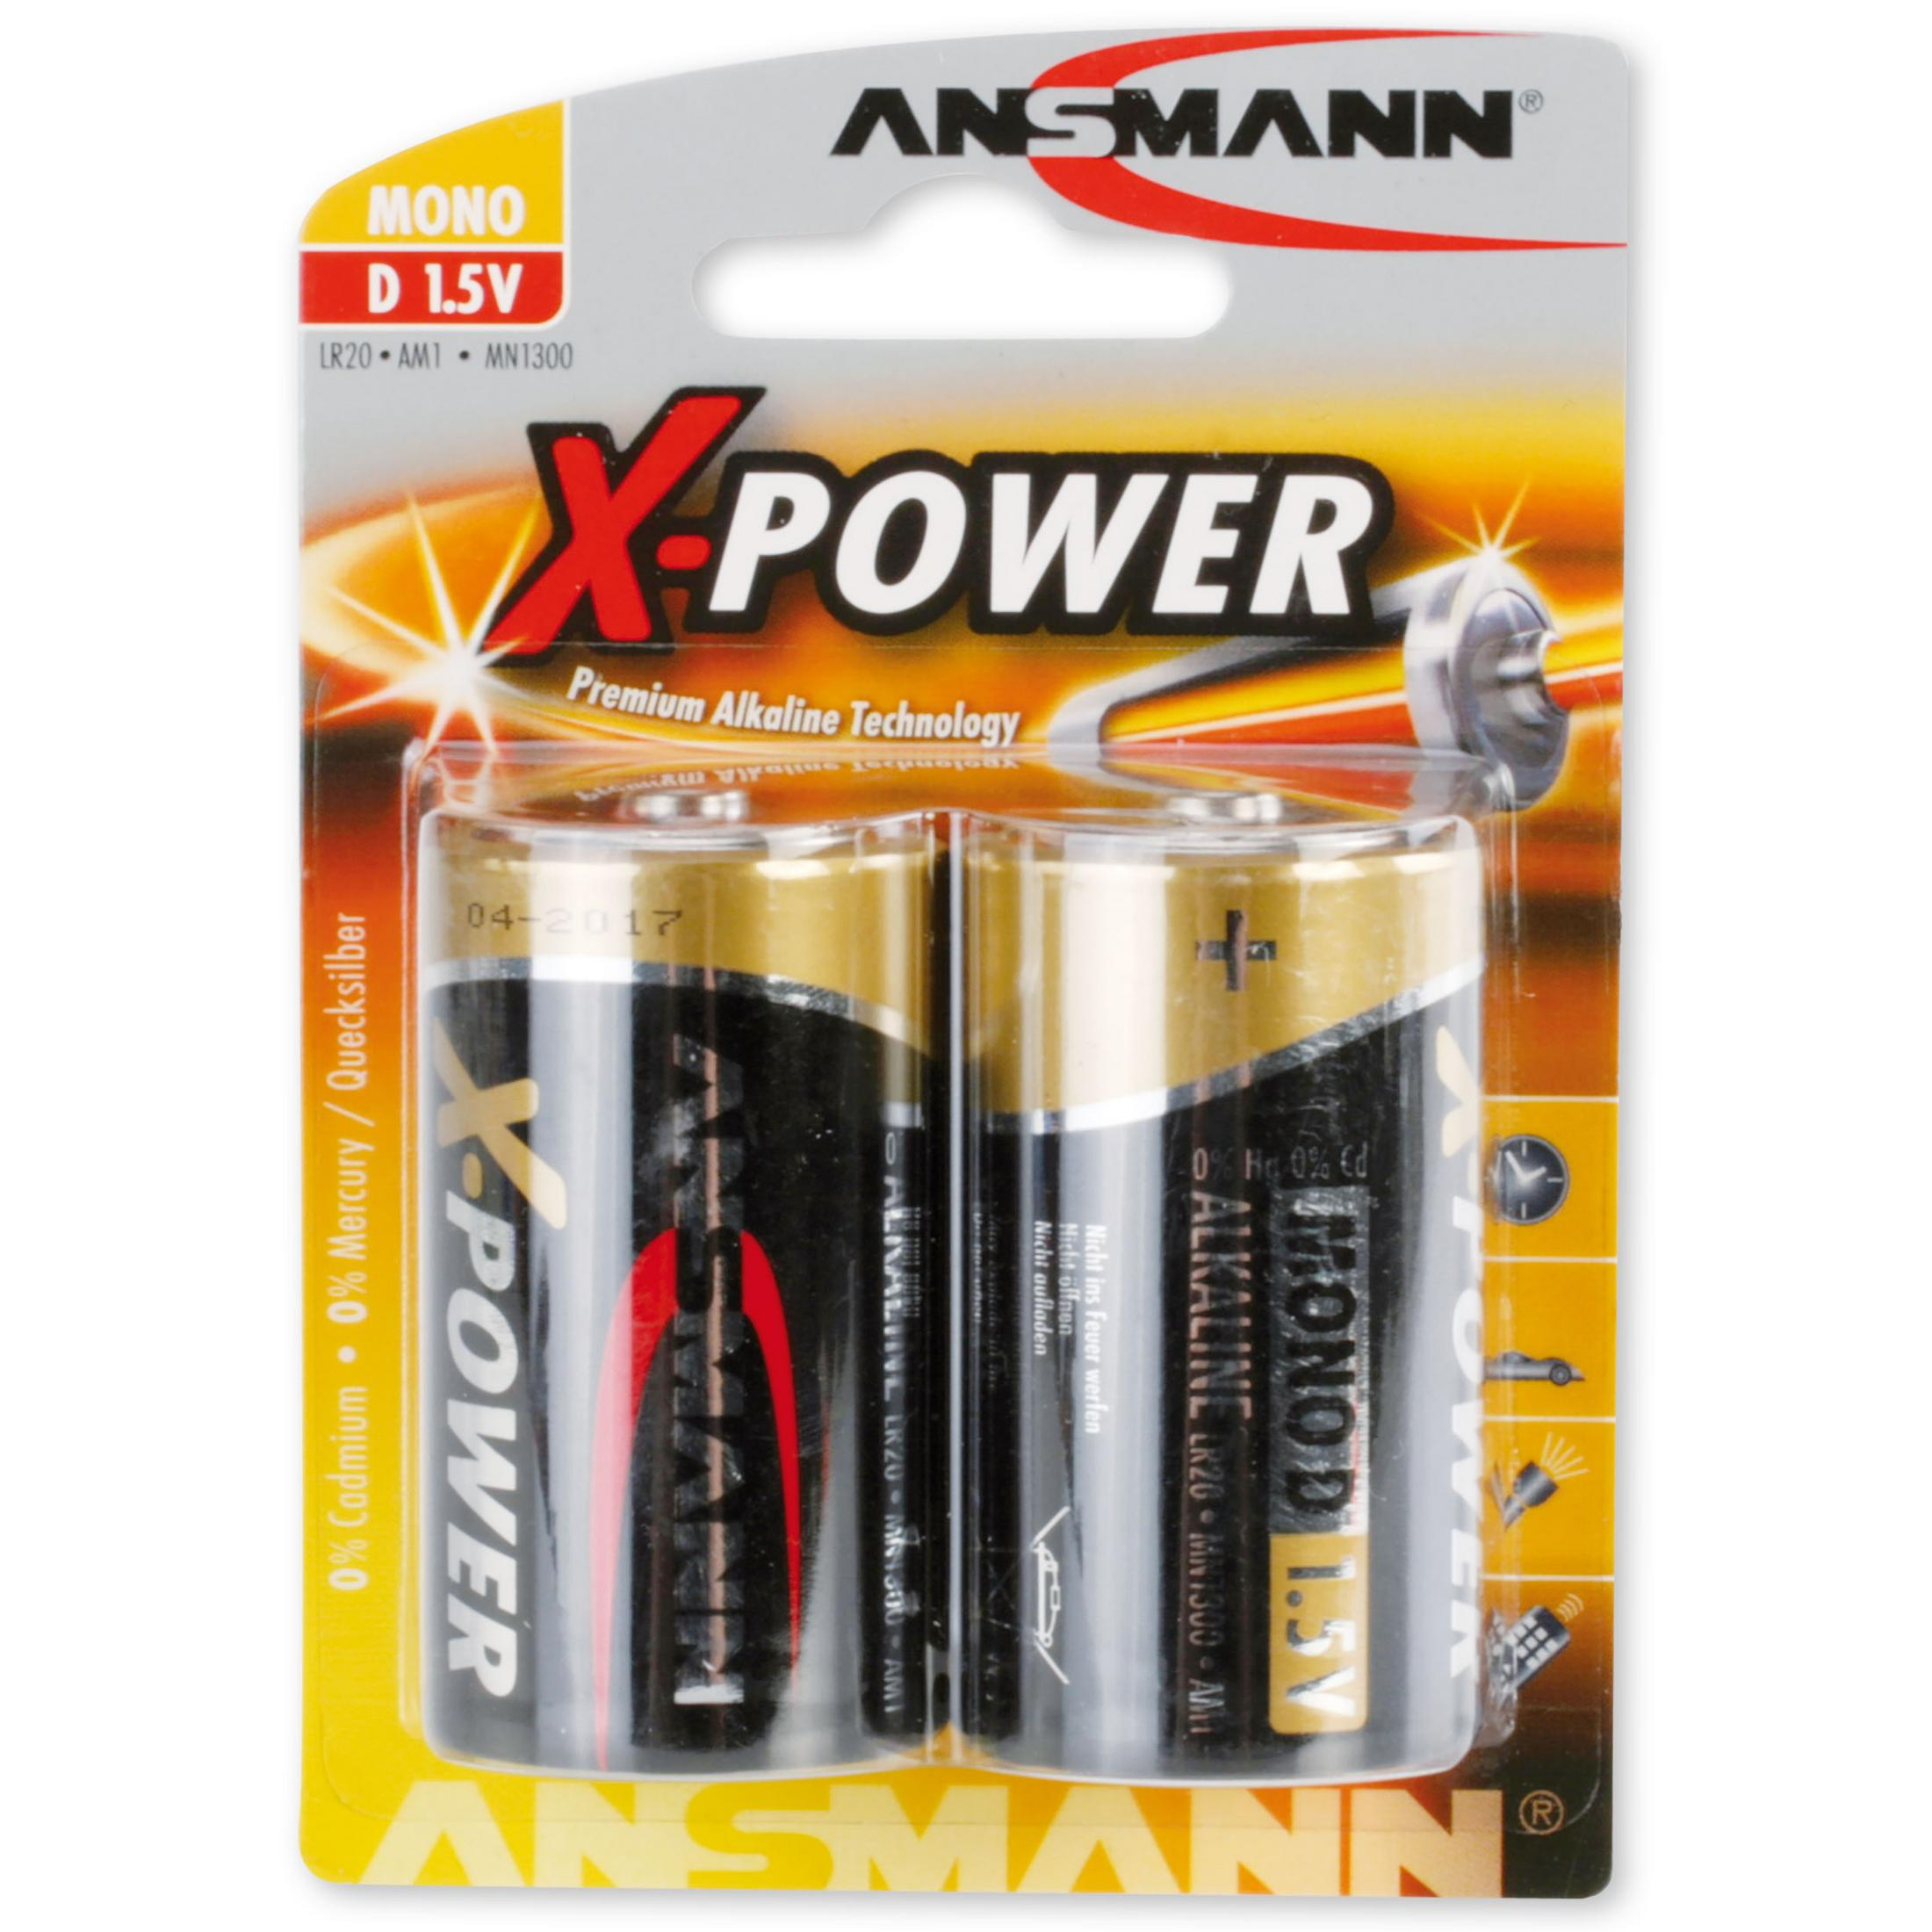 ANSMANN ANSMANN 5015633 Alkaline Batterie X-Power, D, Volt Mono 2er-Pack Stück Strom / Alkaline, 2 Batterien / Batterien, 1.5